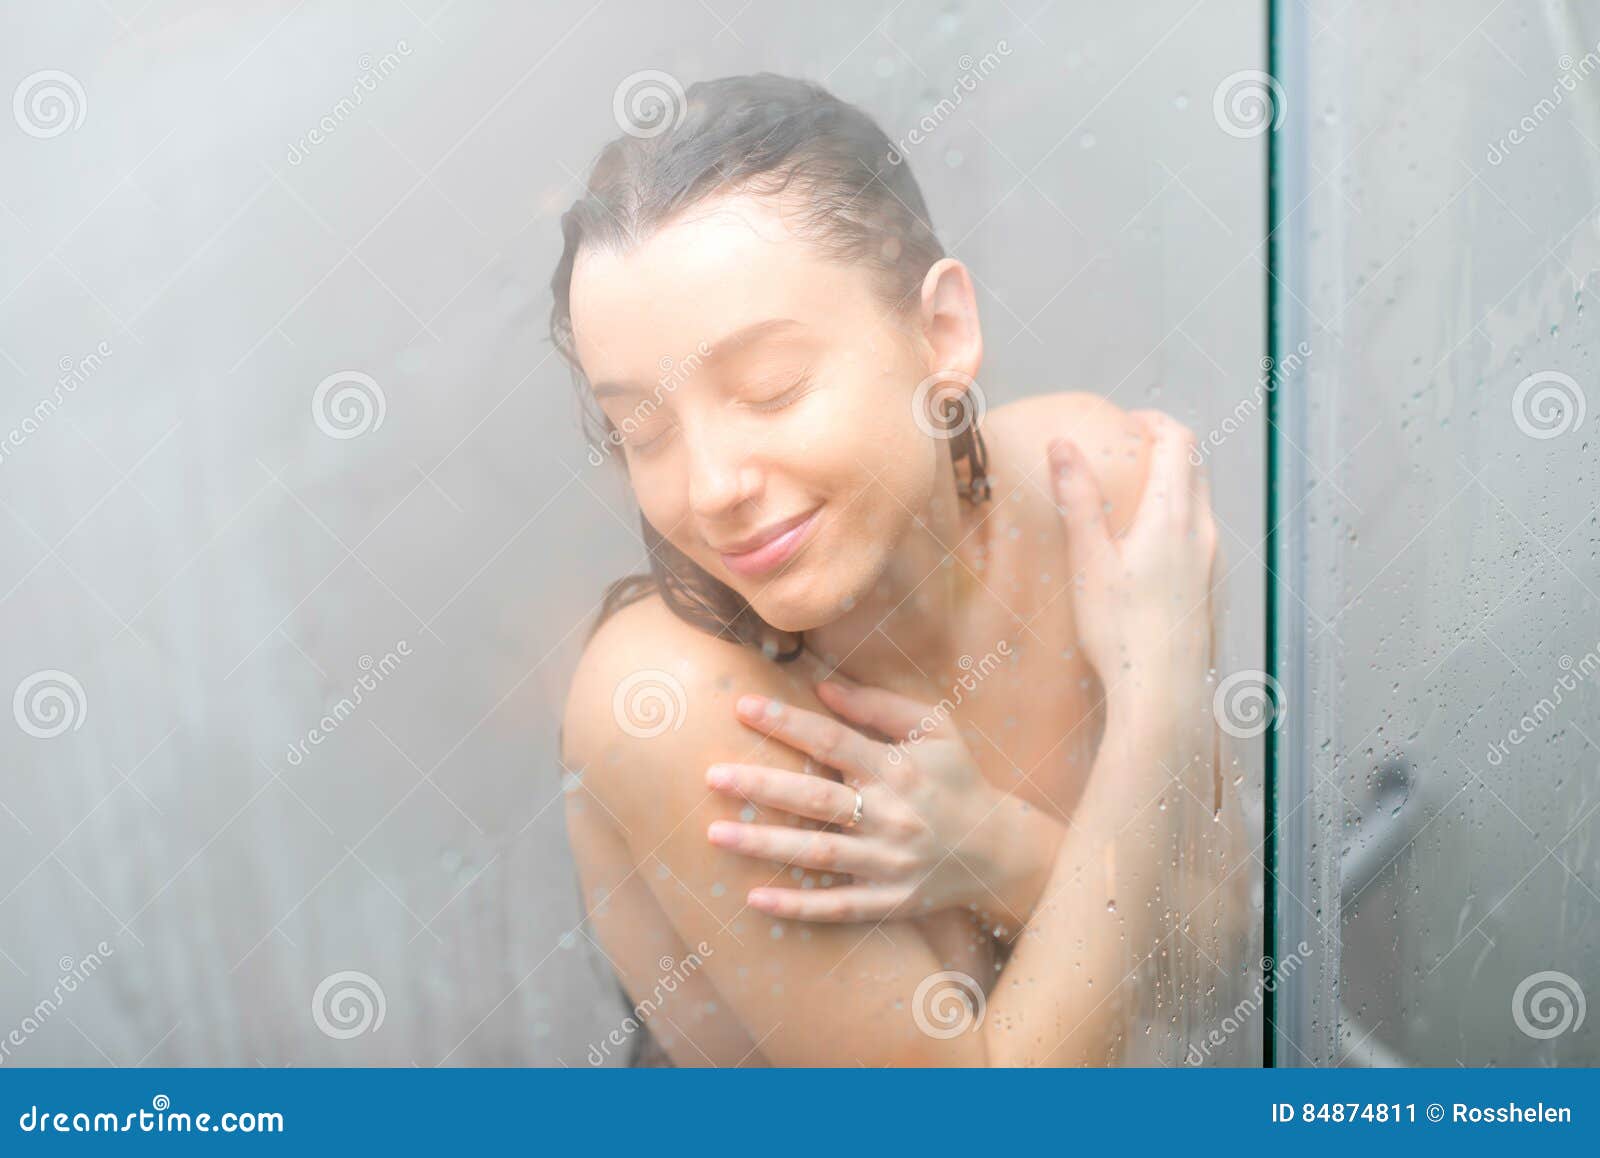 Tw showering